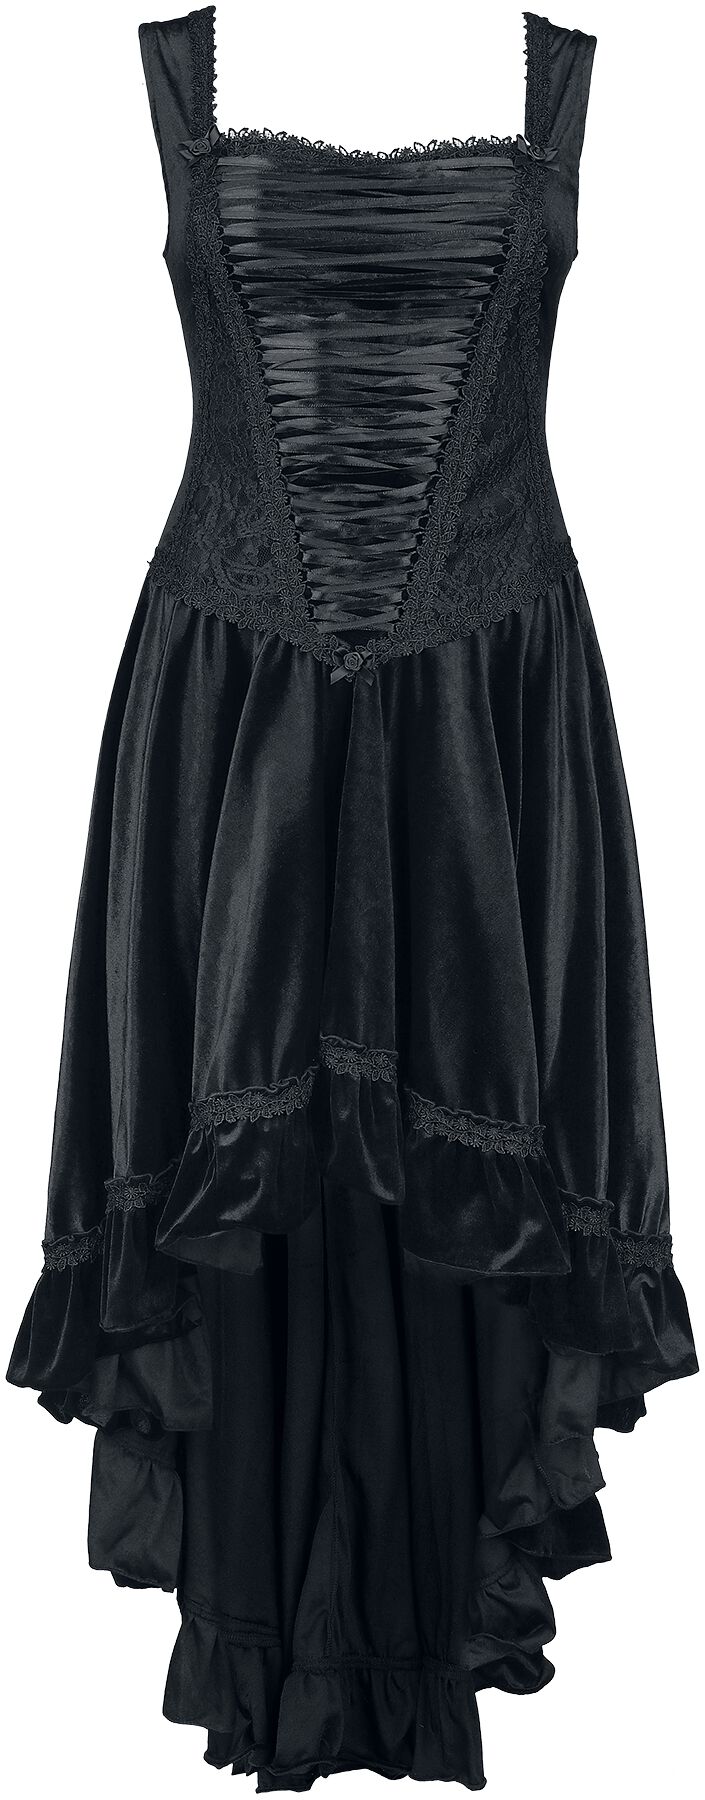 Image of Abito media lunghezza Gothic di Sinister Gothic - Mullet dress - L - Donna - nero